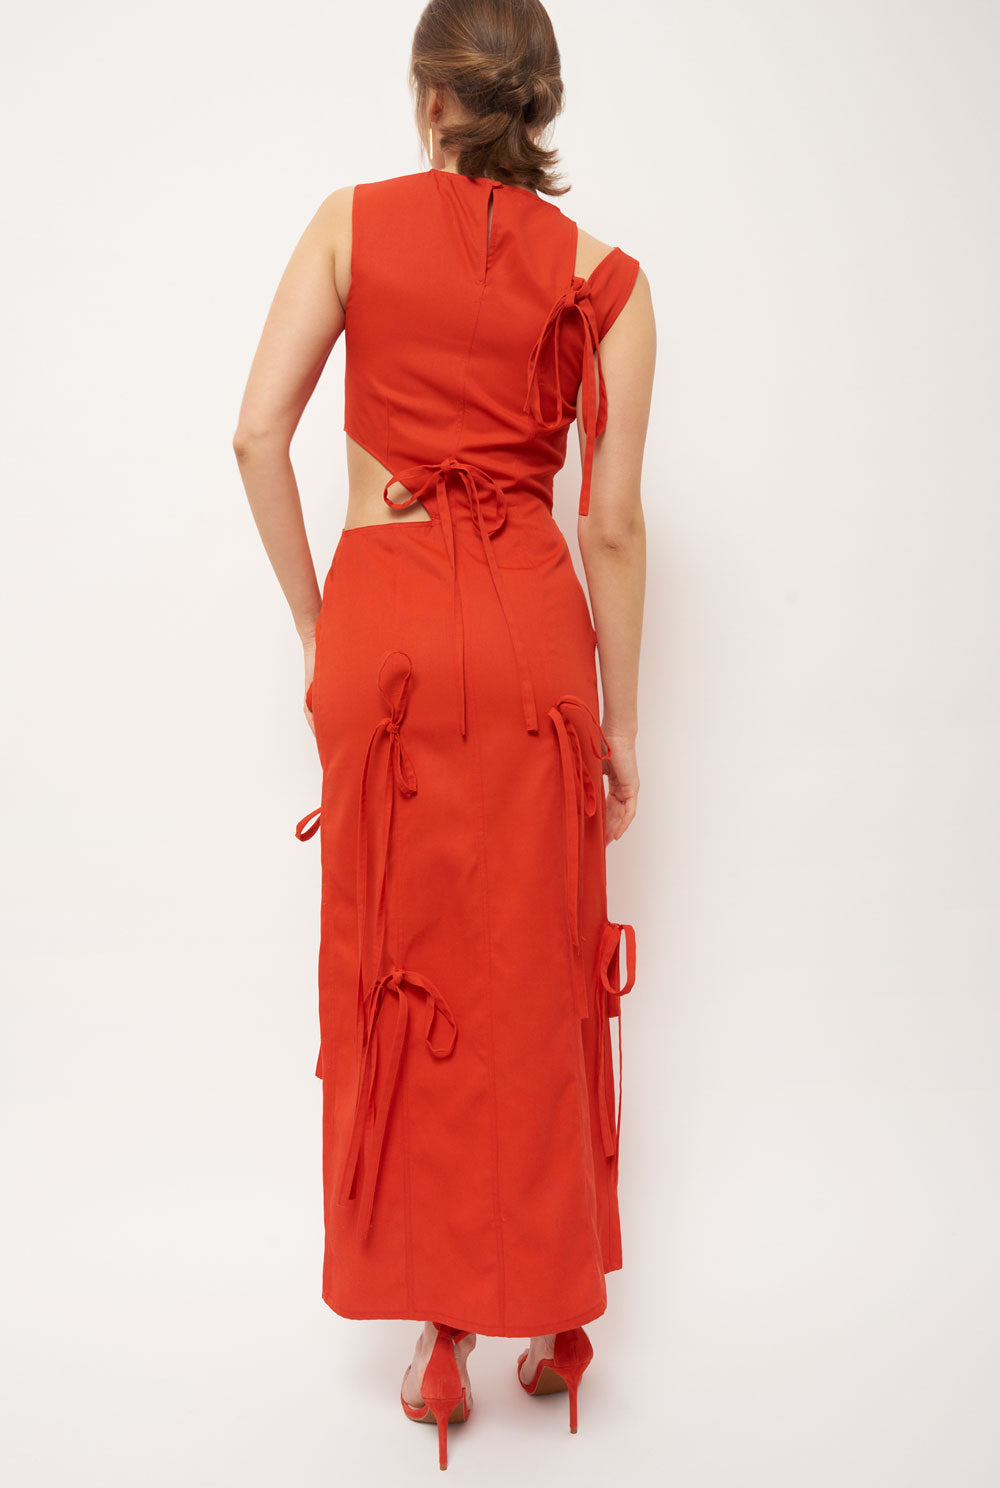 Red asymmetrical long dress dress Habey Club 